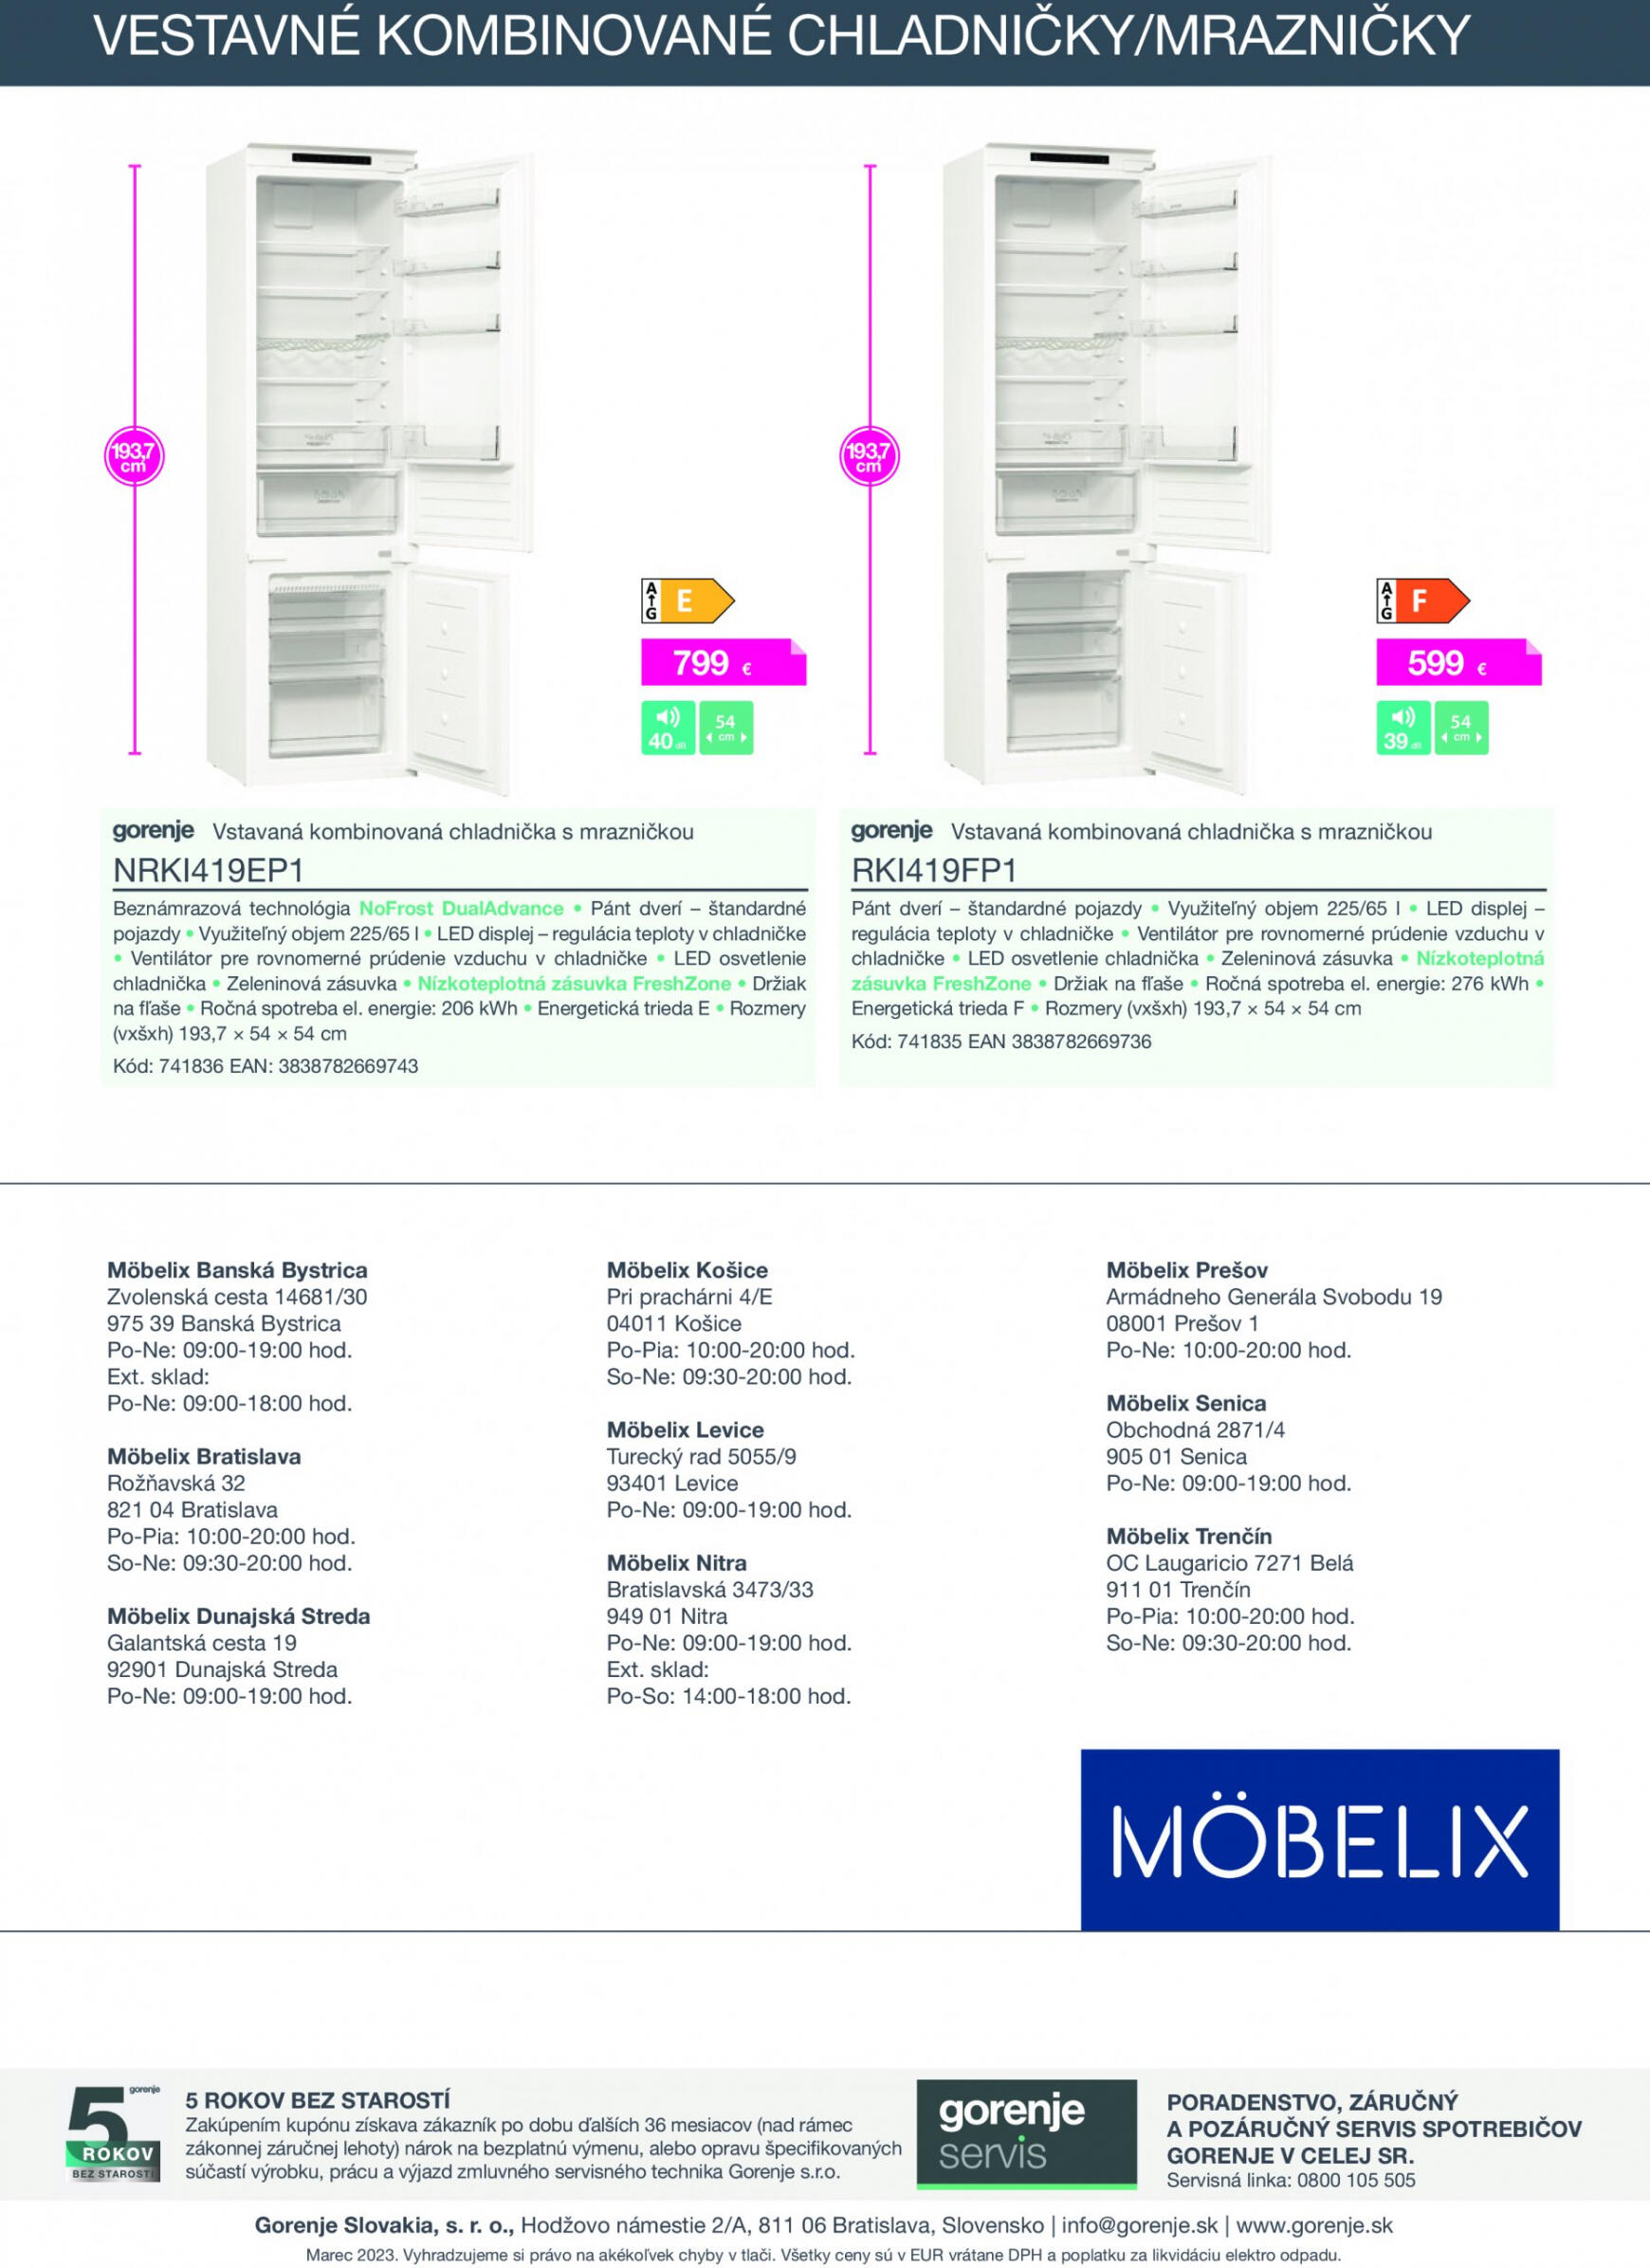 mobelix - Möbelix - GORENJE - page: 19